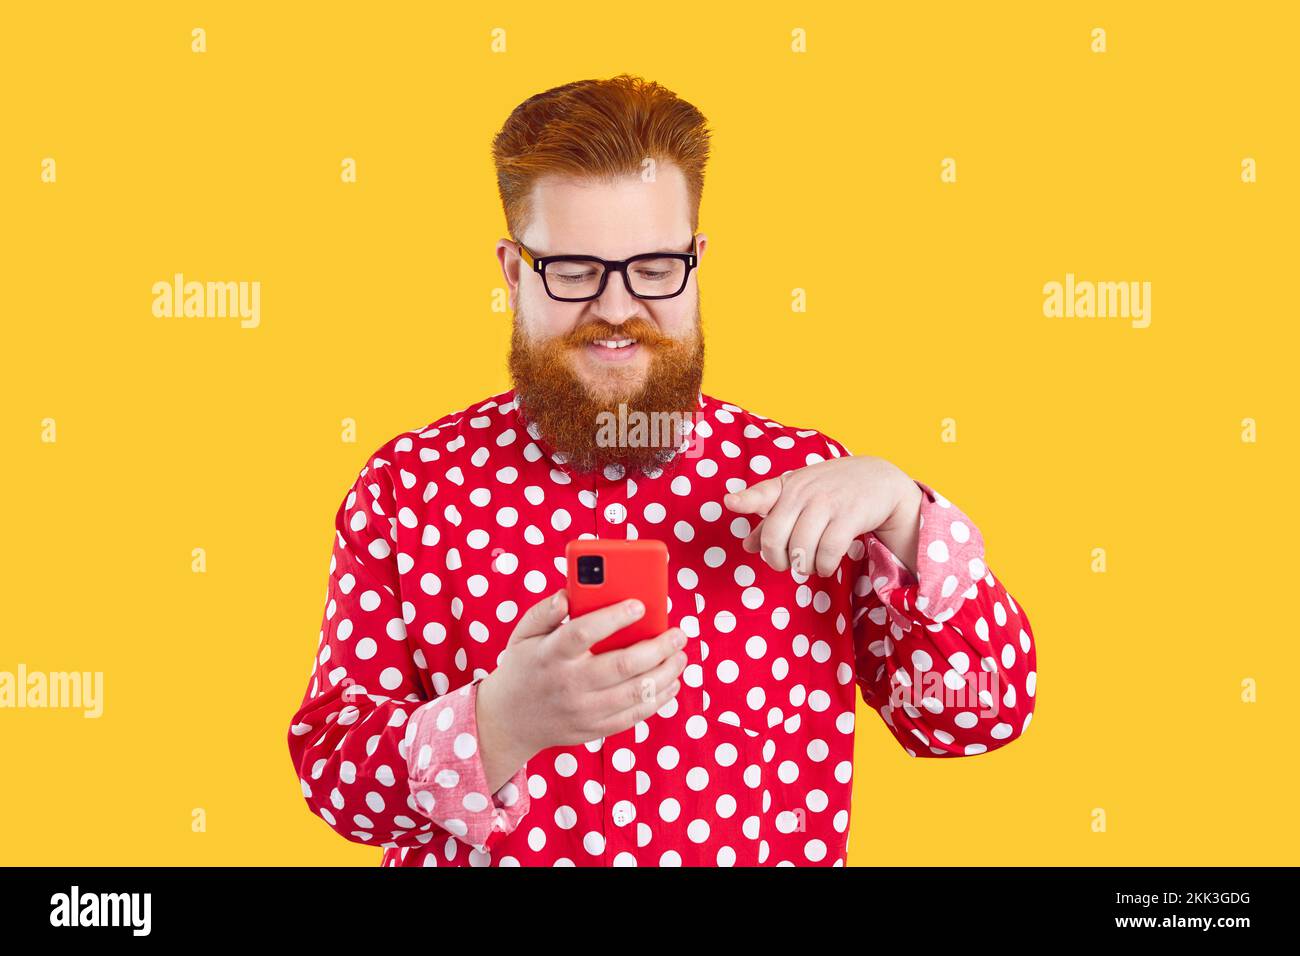 Der fröhliche, bärtige, dicke Mann nutzt gerne die mobile Anwendung, die auf seinem modernen Smartphone installiert ist. Stockfoto